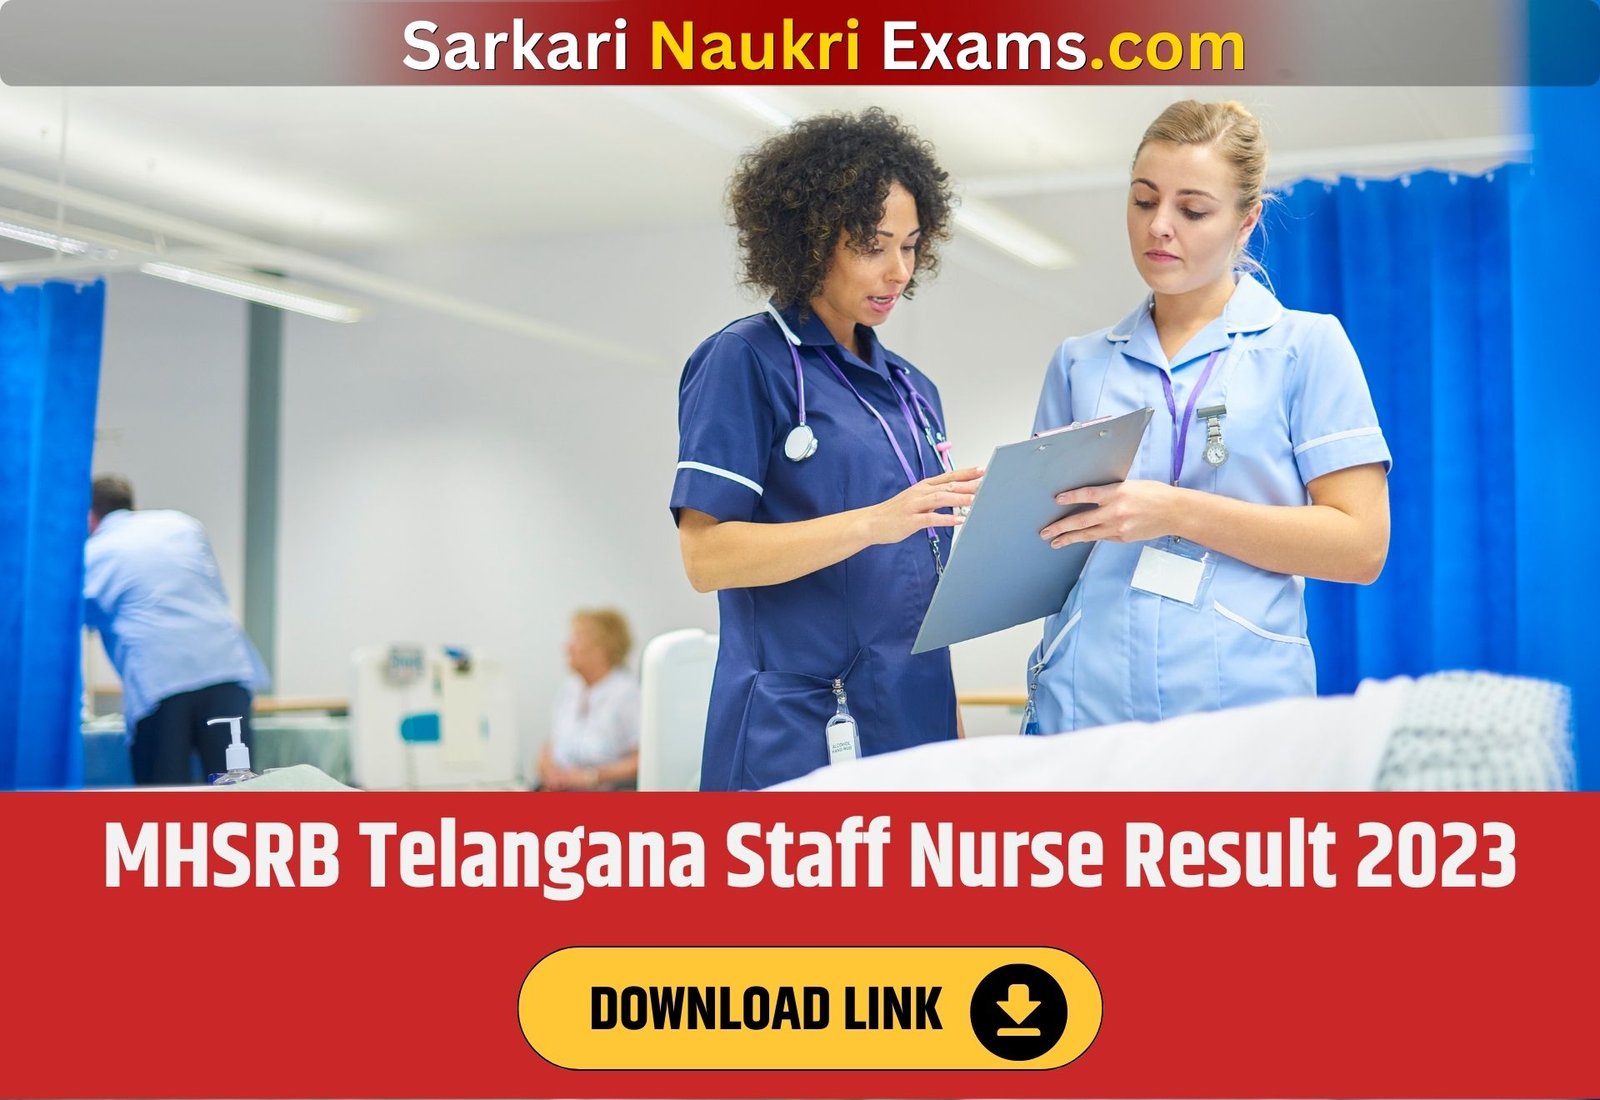 MHSRB Telangana Staff Nurse Result 2023 | Merit List, Cut Off